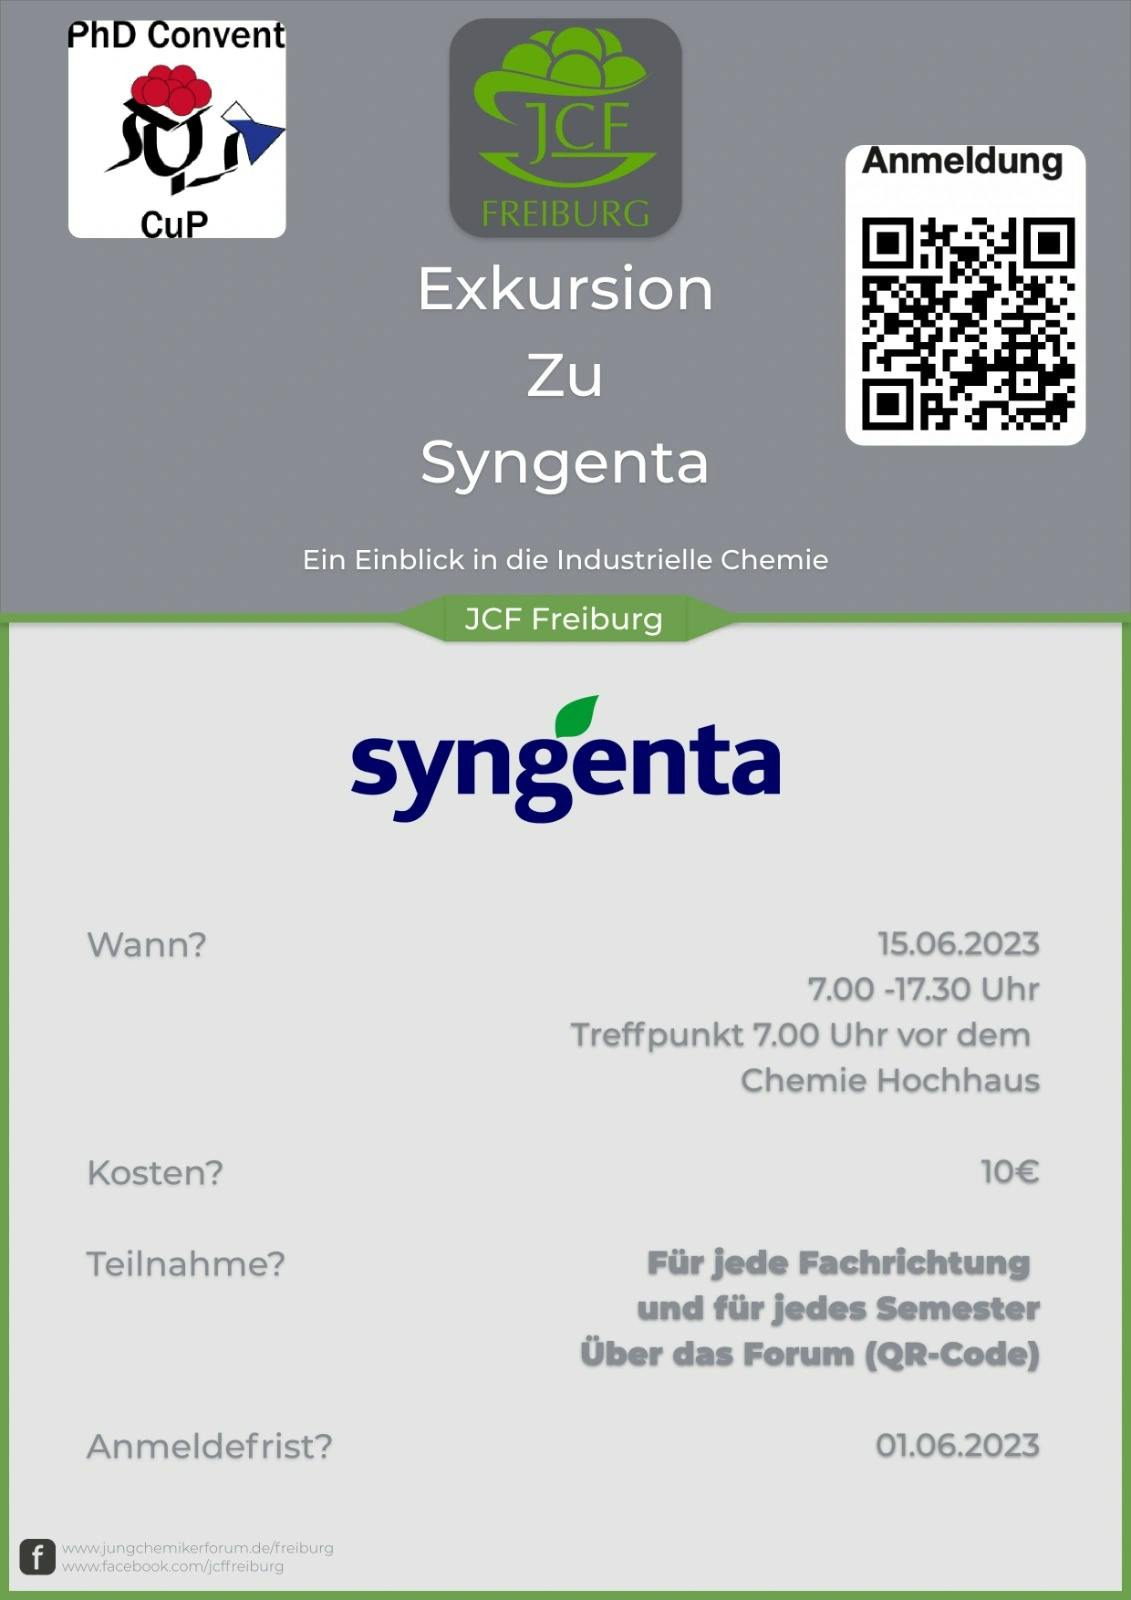 Exkursion zu Syngenta- ein Einblick in die industrielle Chemie